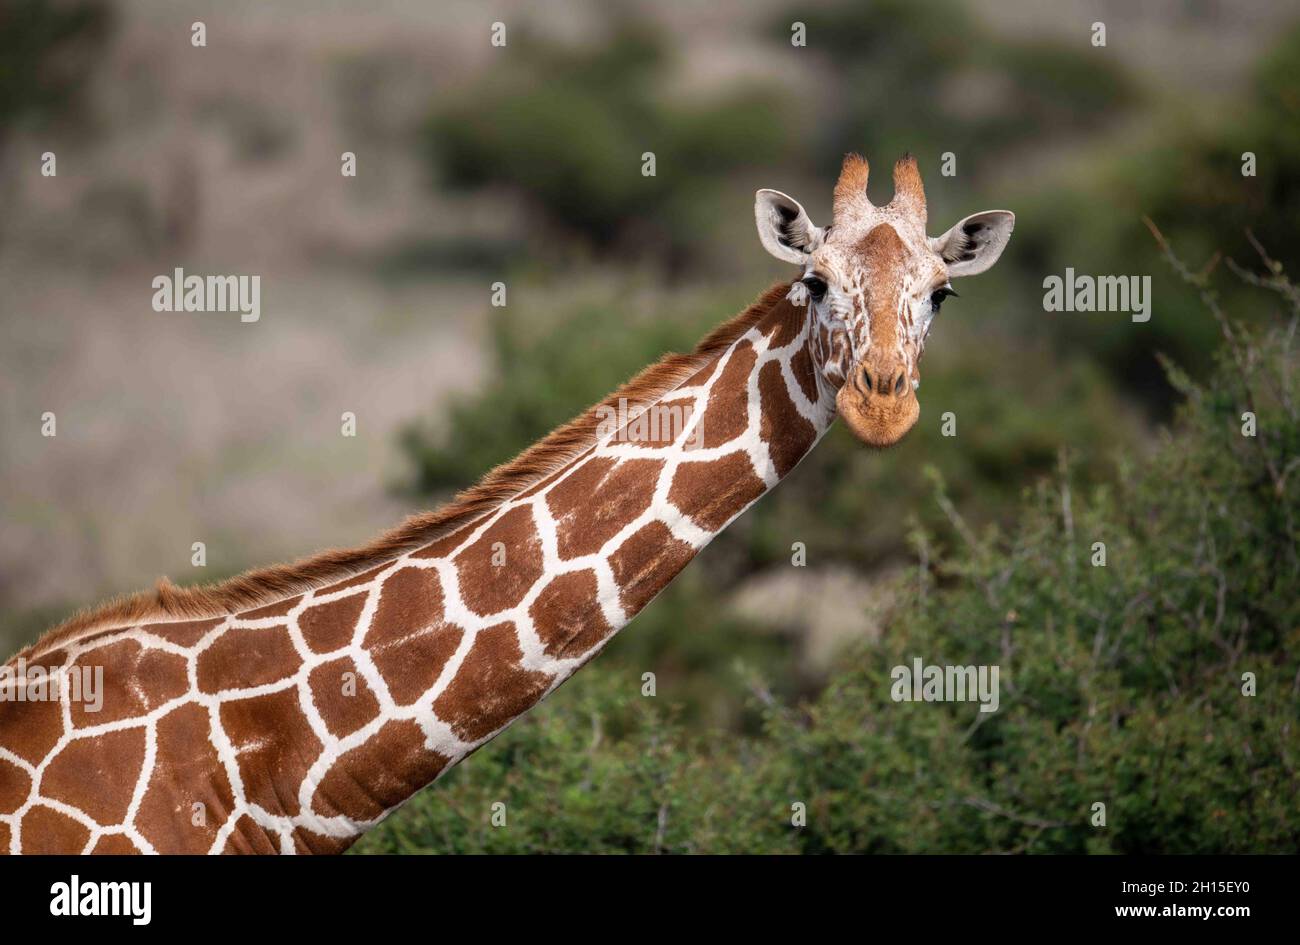 Girafe réticulée parmi les buissons montrant ses grandes taches polygonales sur son long cou. Banque D'Images